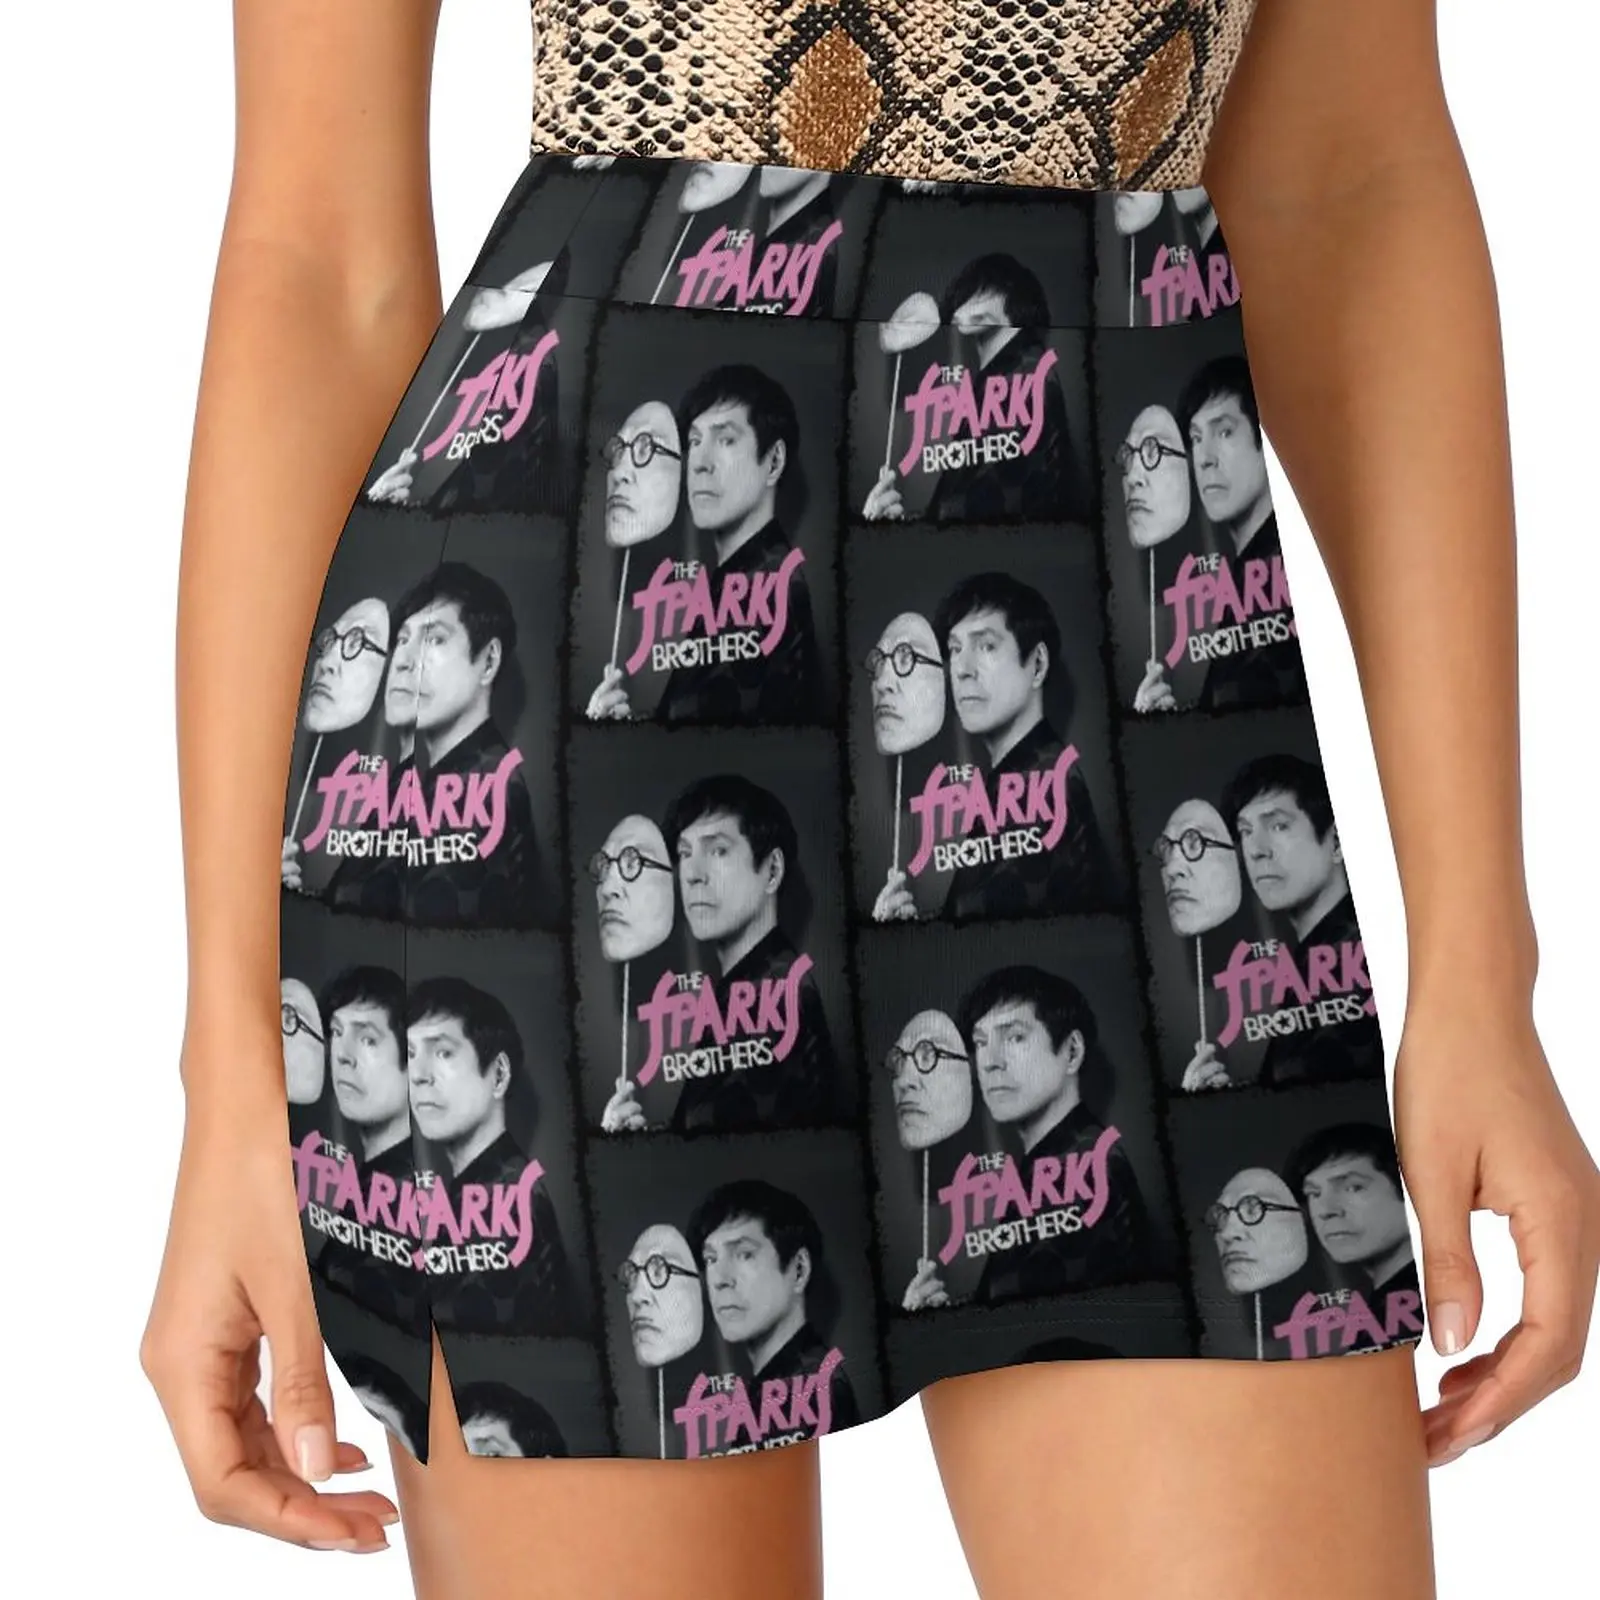 Sparks Band Music Band Gift For Fan Light Proof Trouser Skirt Woman skirts short skirts for women